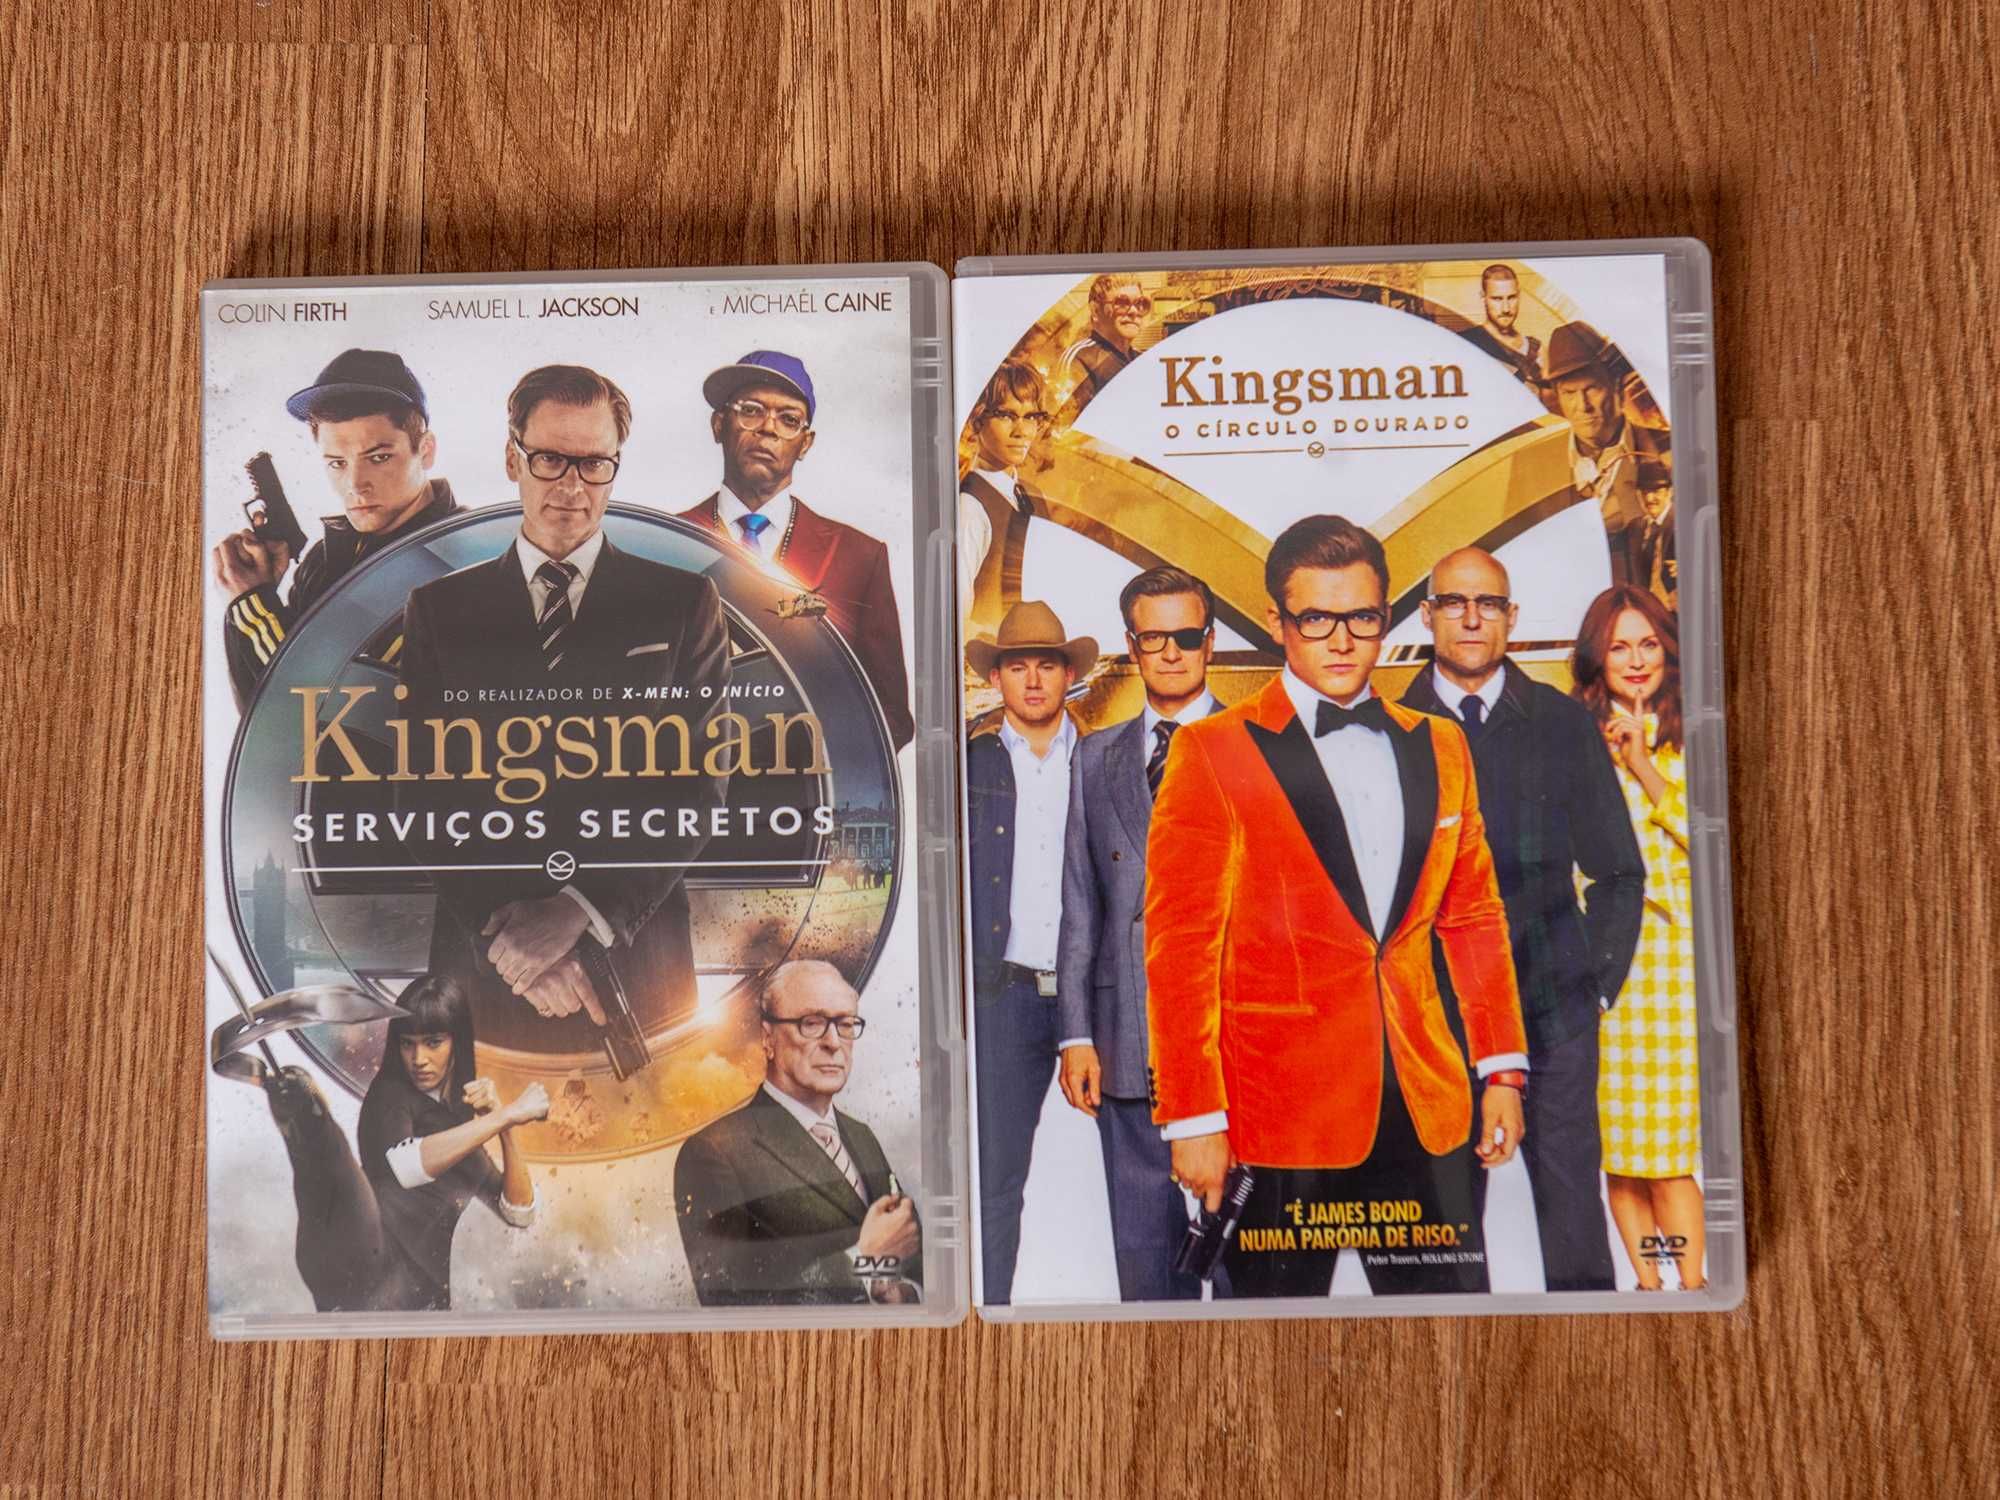 Kingsman DVD original